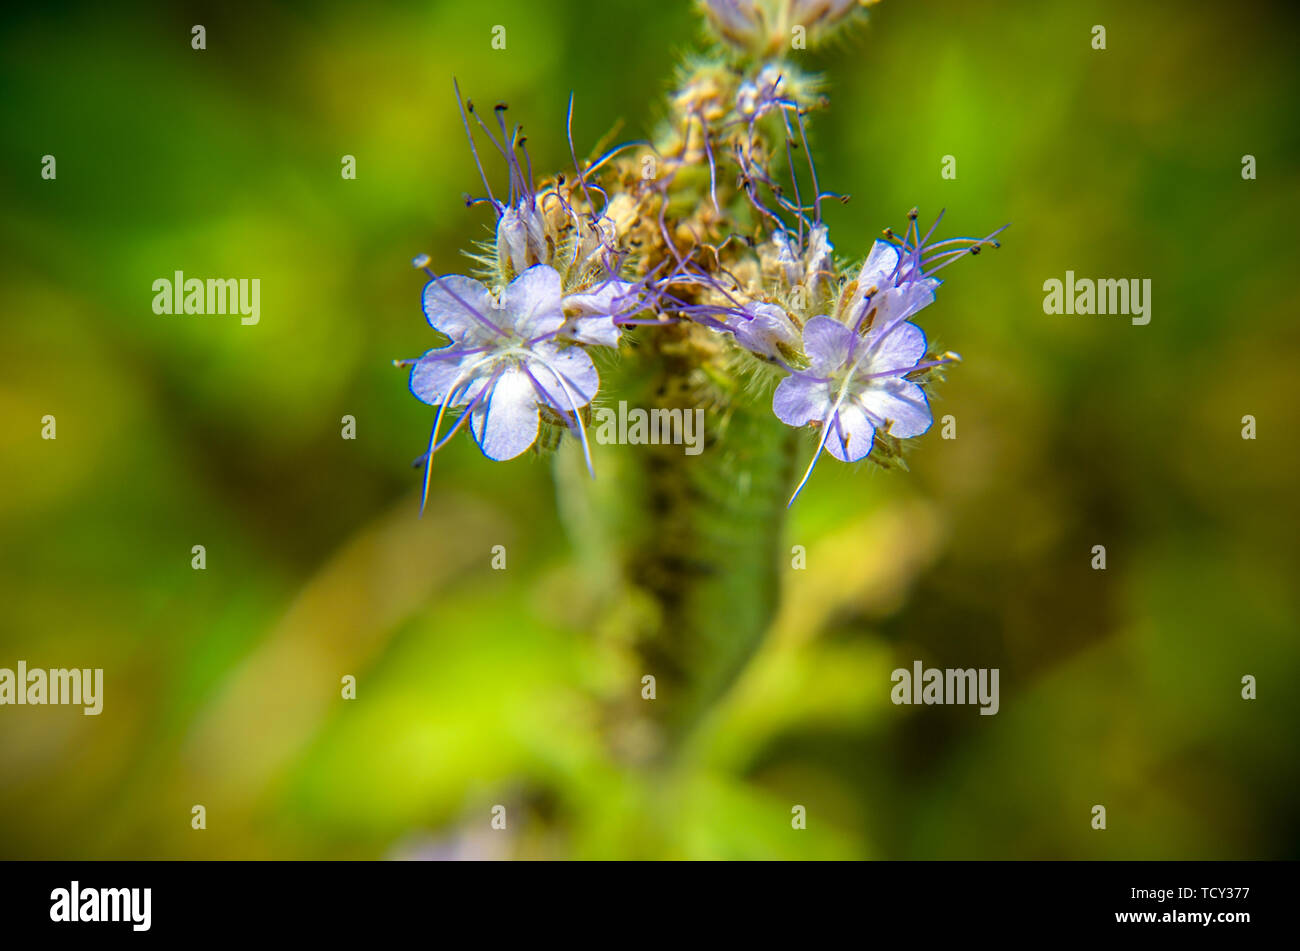 Un close up macro shot del campo di blu e fiori viola, denominato Lacy phacelia, Phacelia tanacetifolia, viola o blu tansy - immagine Foto Stock